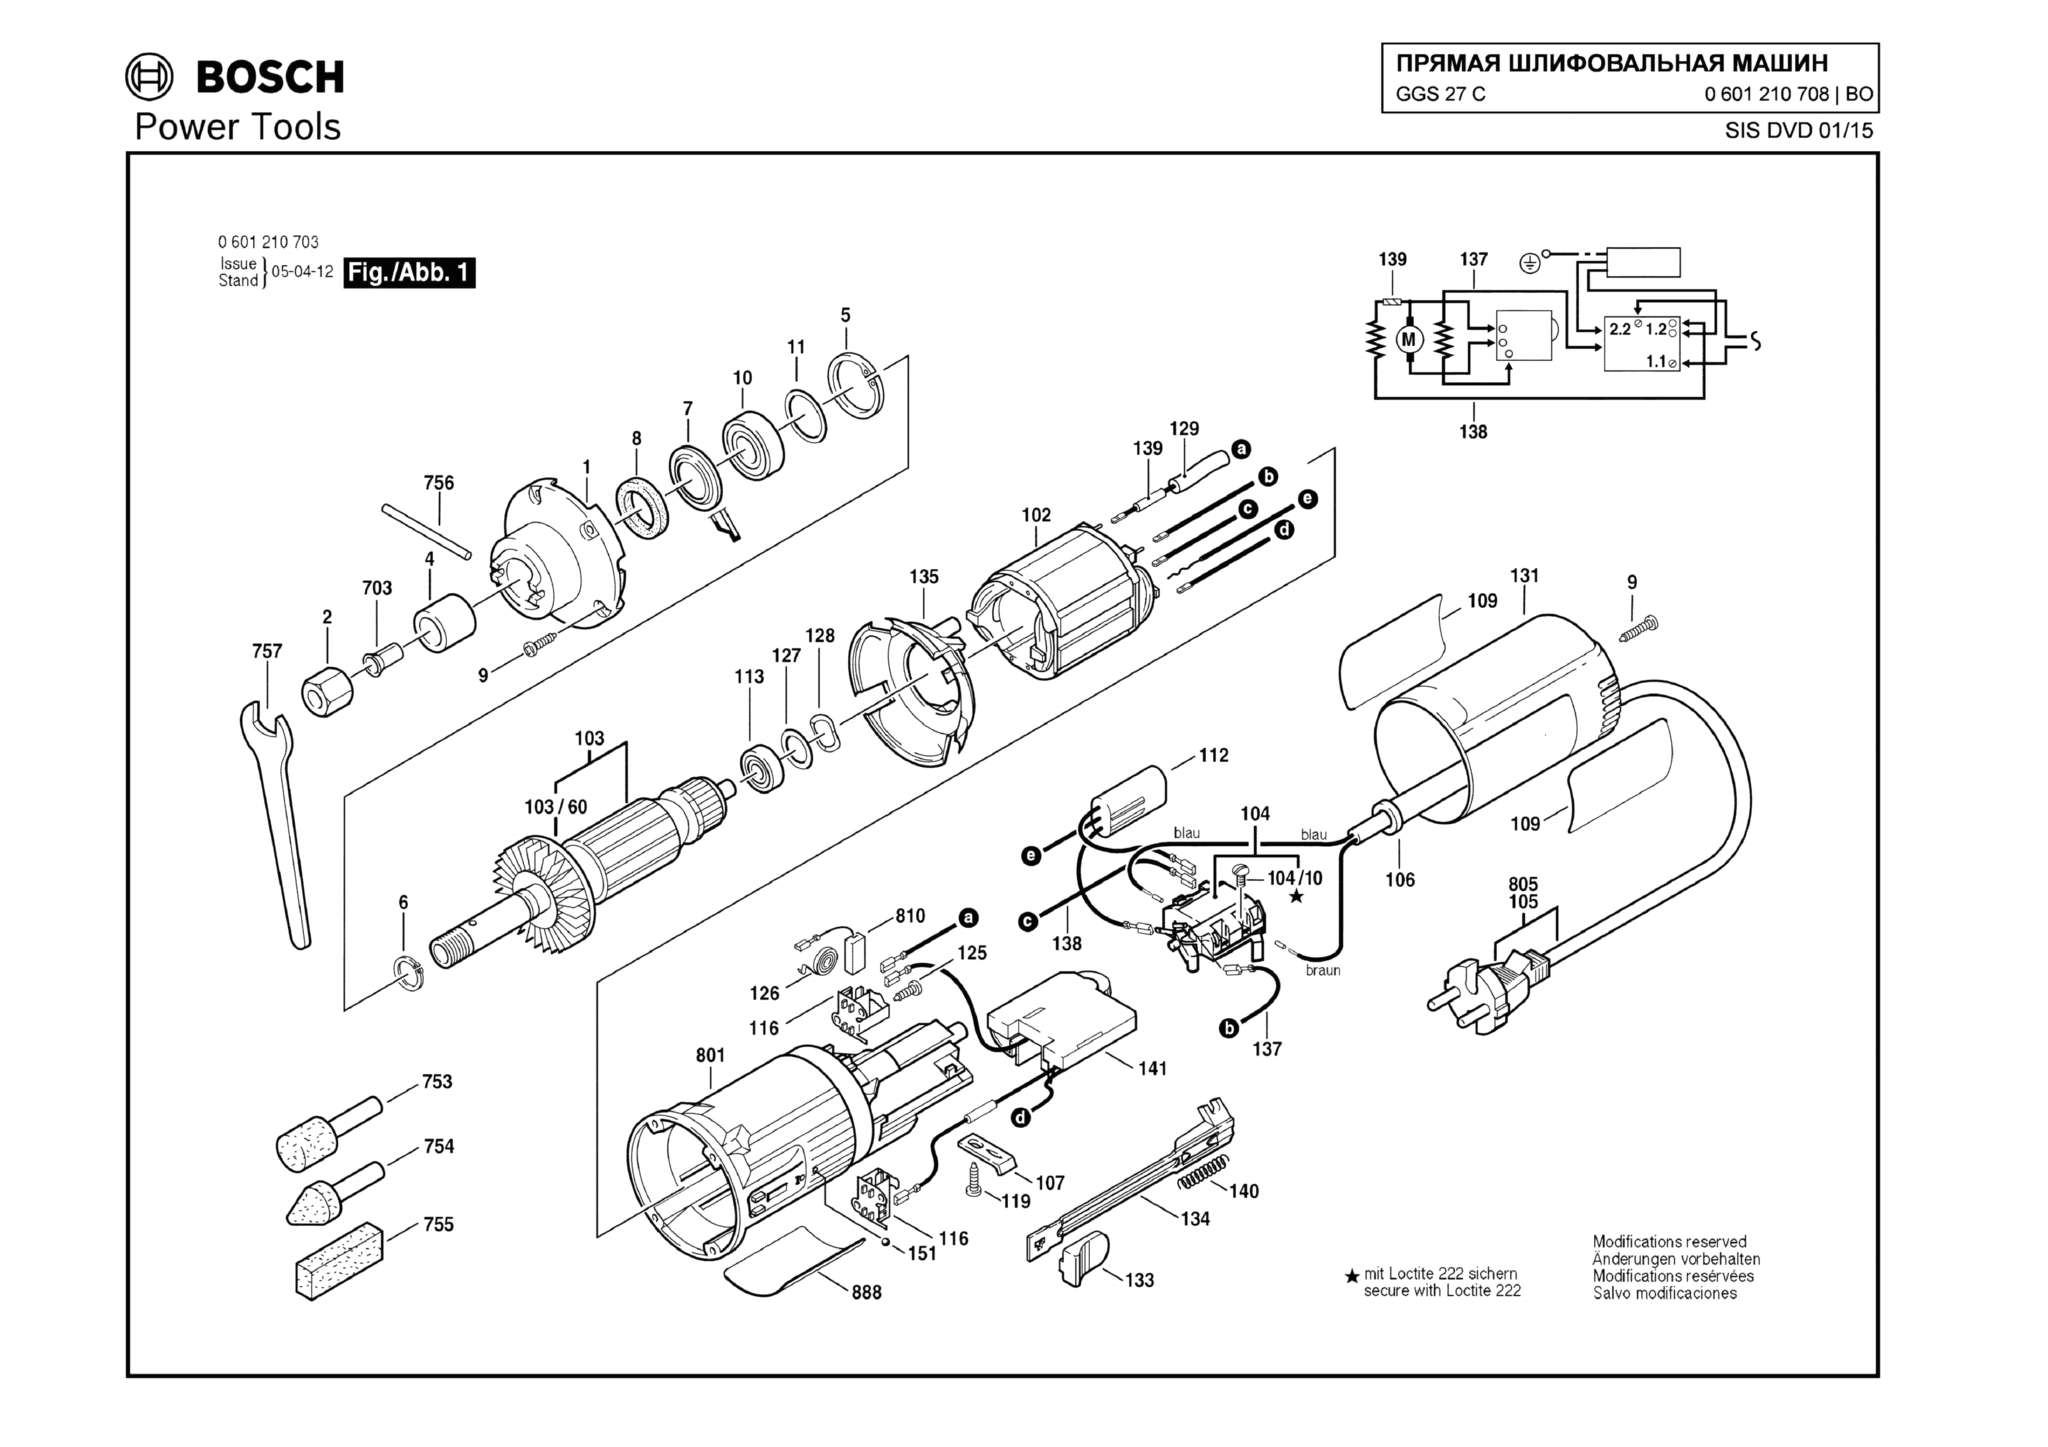 Запчасти, схема и деталировка Bosch GGS 27 C (ТИП 0601210708)